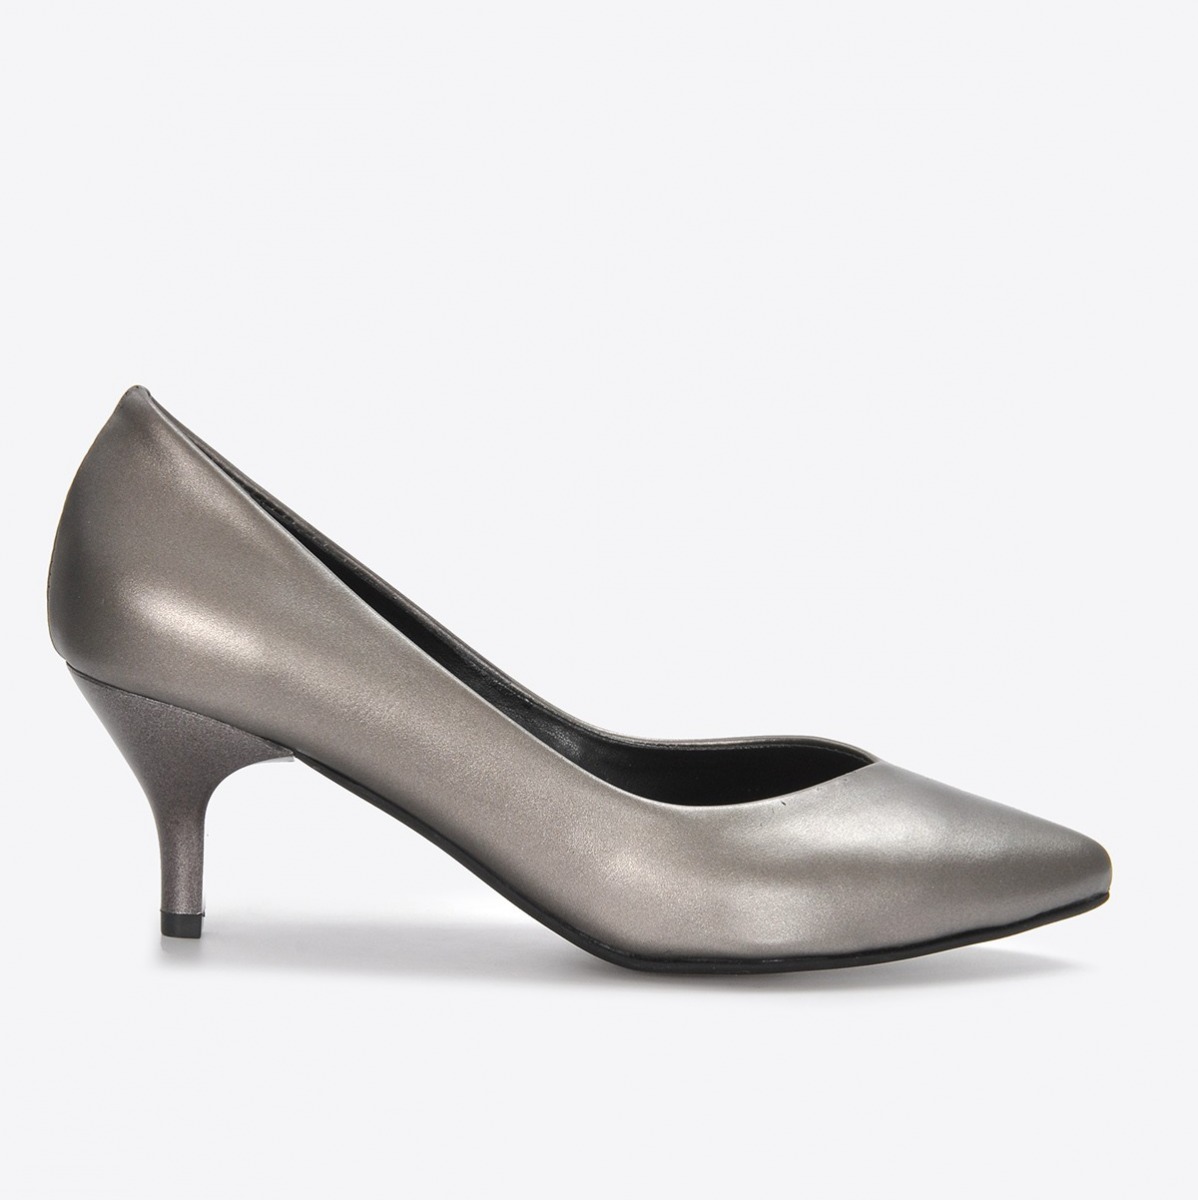 Flo Kadın Platin Klasik Topuklu Ayakkabı VZN21-001Y. 2